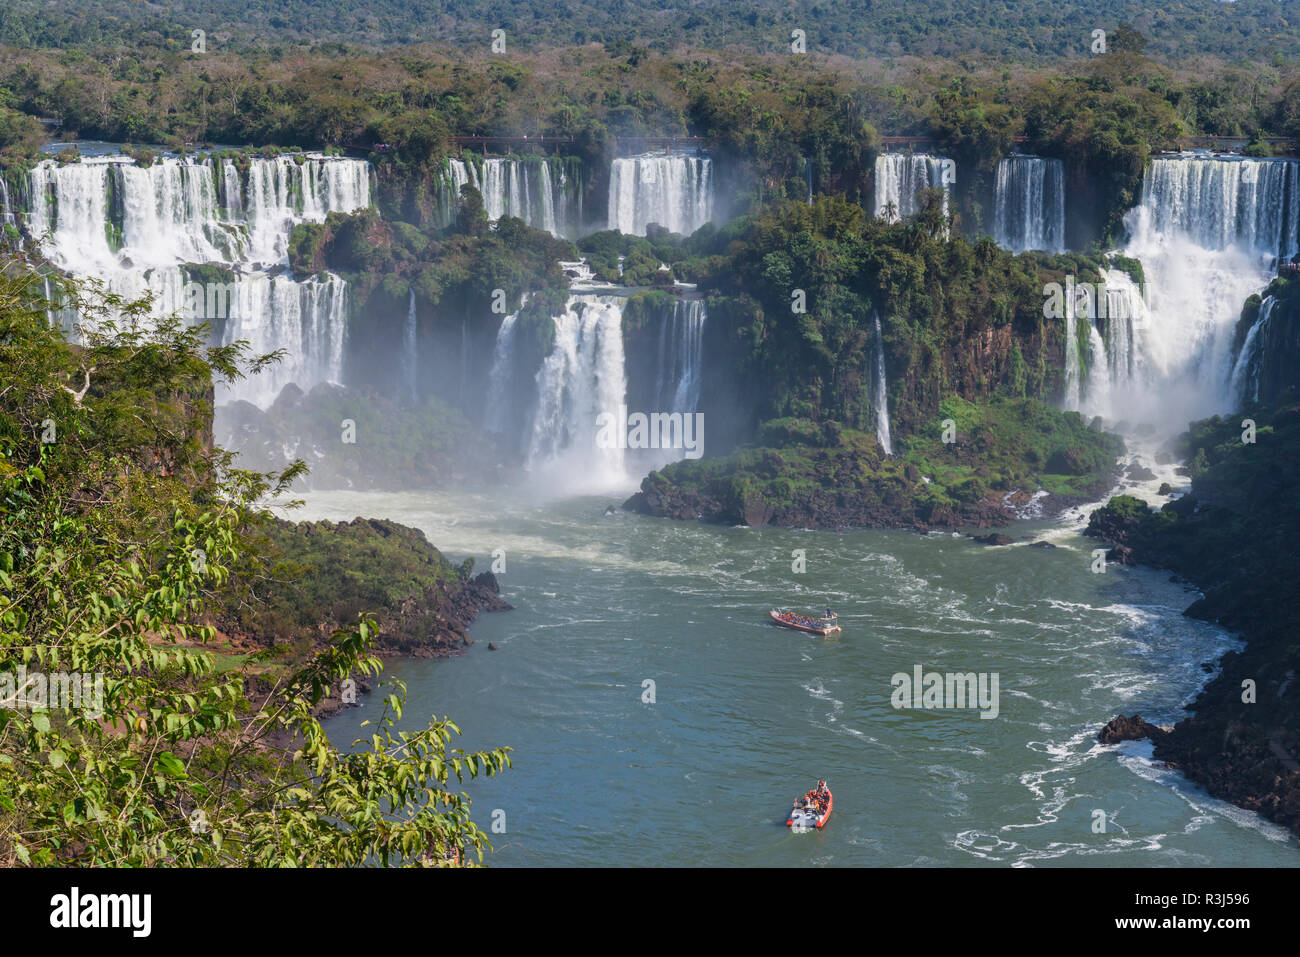 Vista de las Cataratas desde el lado brasileño, Foz do Iguaçu, estado de Paraná, Brasil Foto de stock